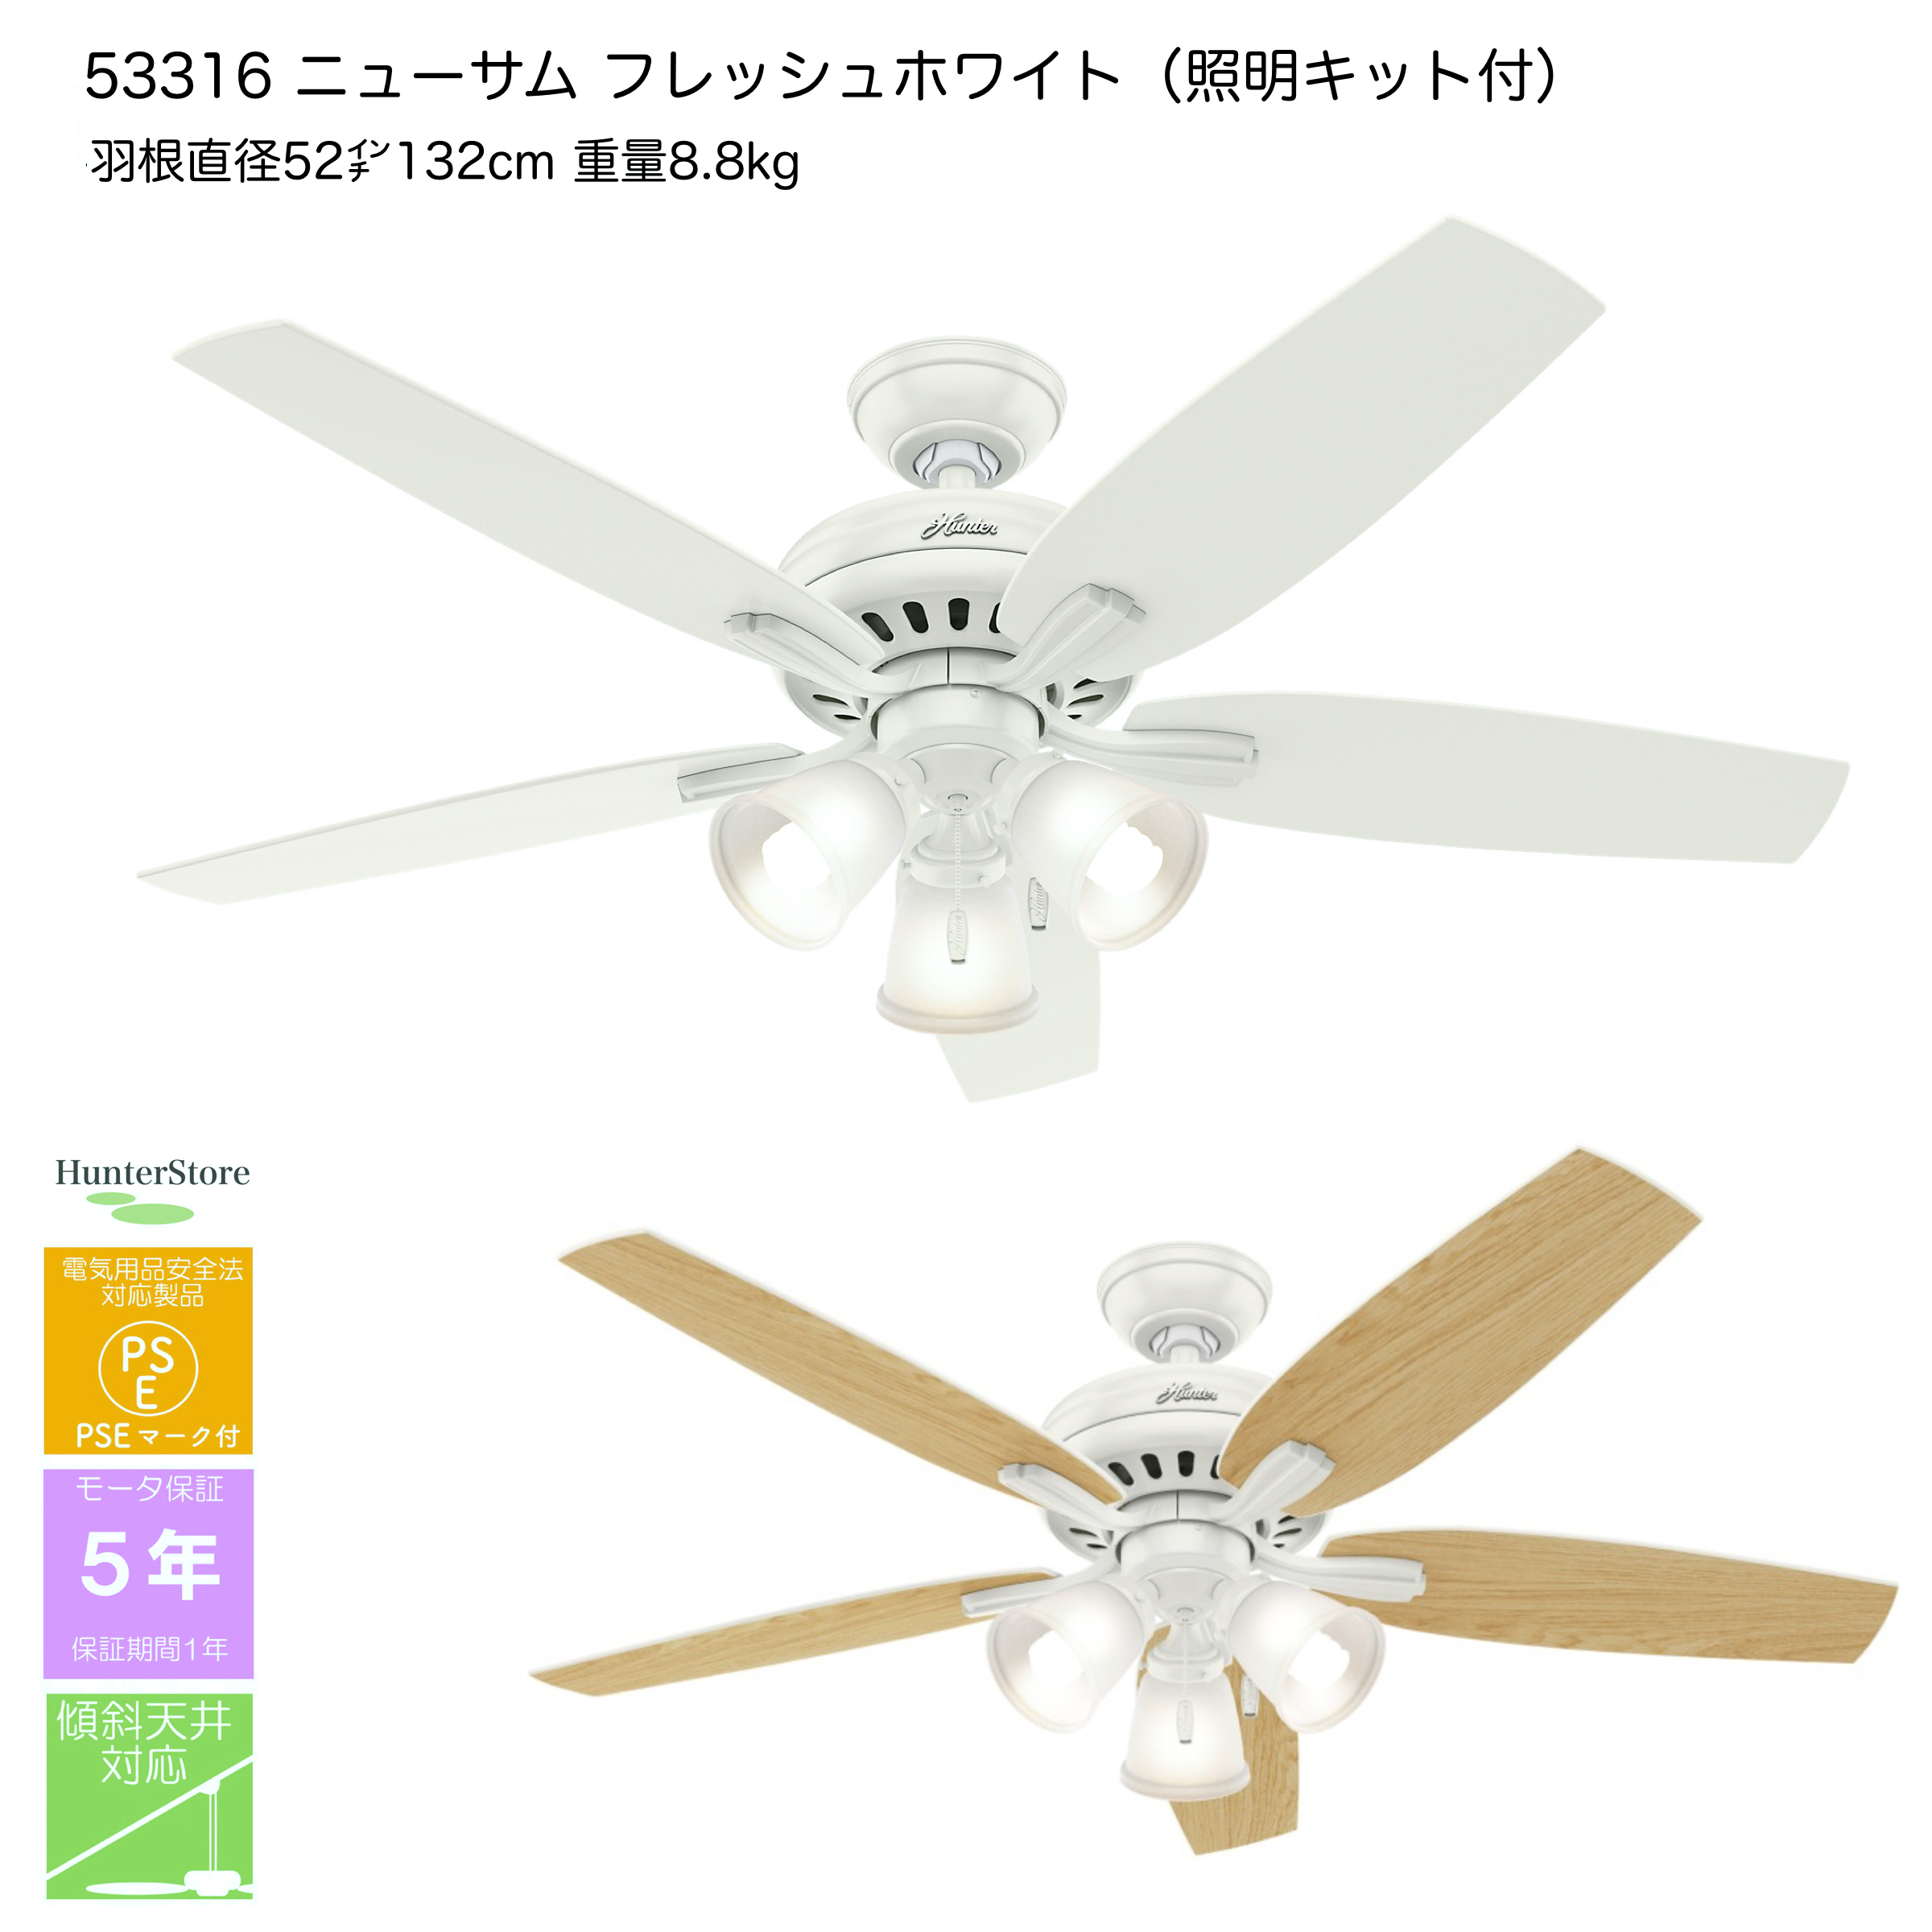 53316 ニューサム フレッシュホワイト 照明付 - 日本正規輸入品